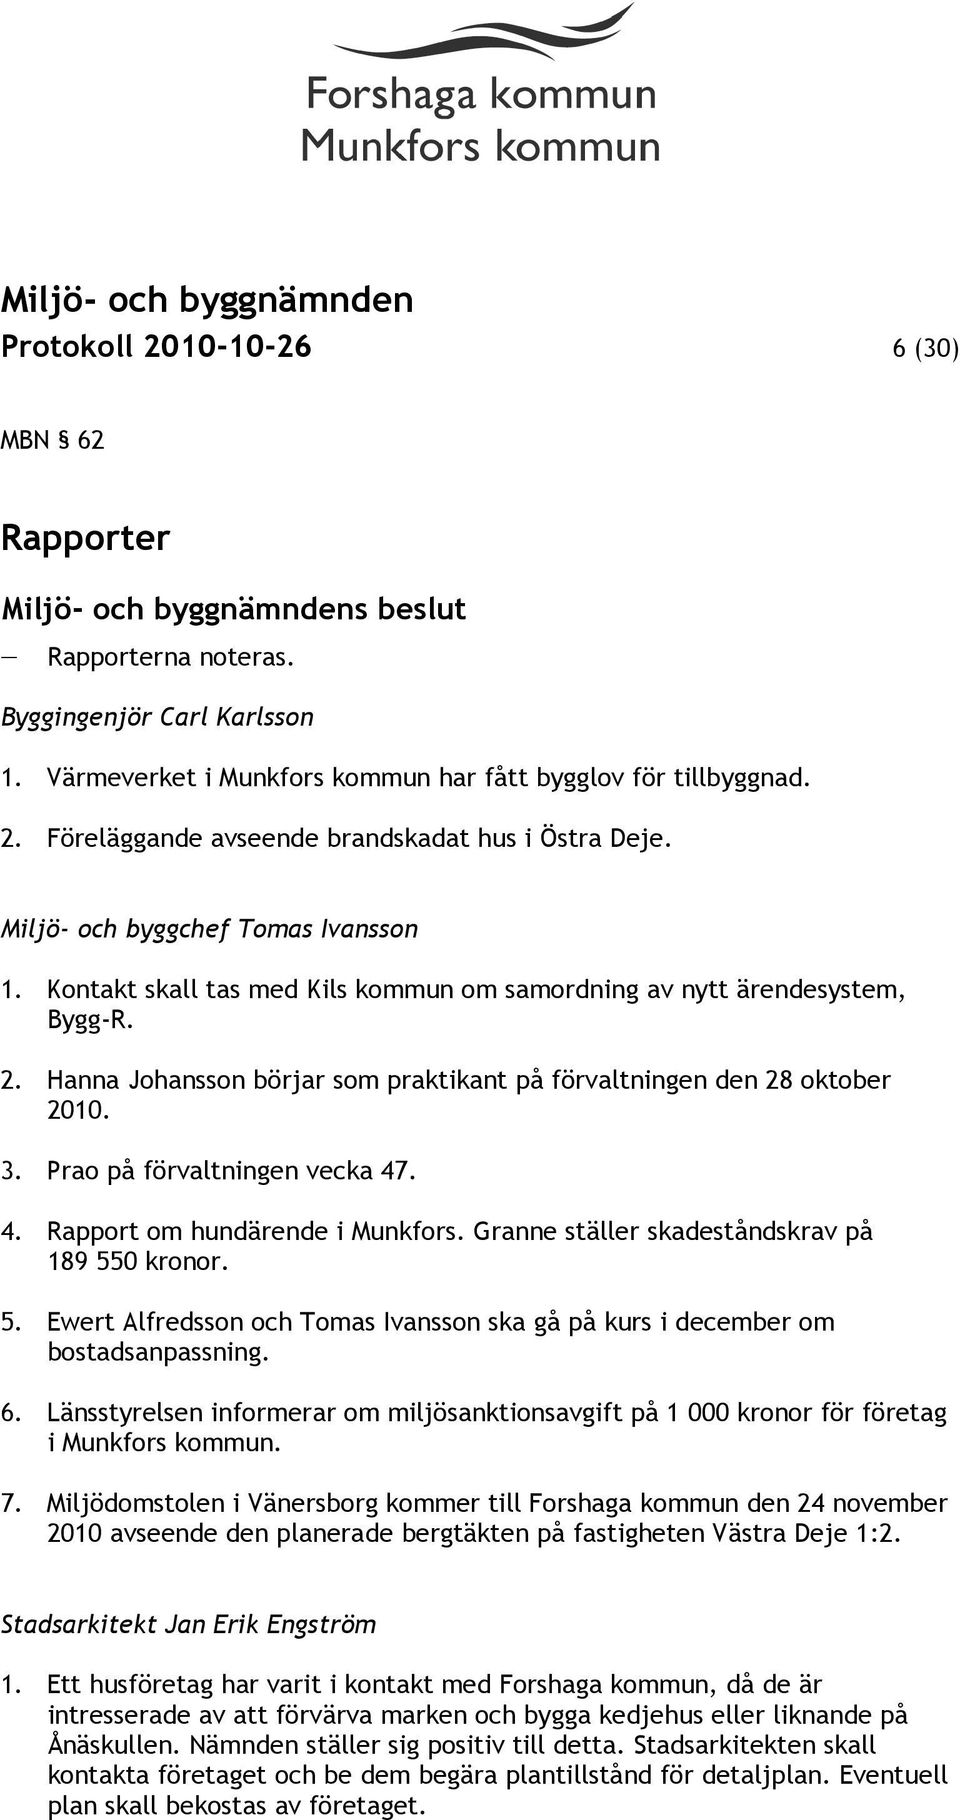 Prao på förvaltningen vecka 47. 4. Rapport om hundärende i Munkfors. Granne ställer skadeståndskrav på 189 550 kronor. 5. Ewert Alfredsson och Tomas Ivansson ska gå på kurs i december om bostadsanpassning.